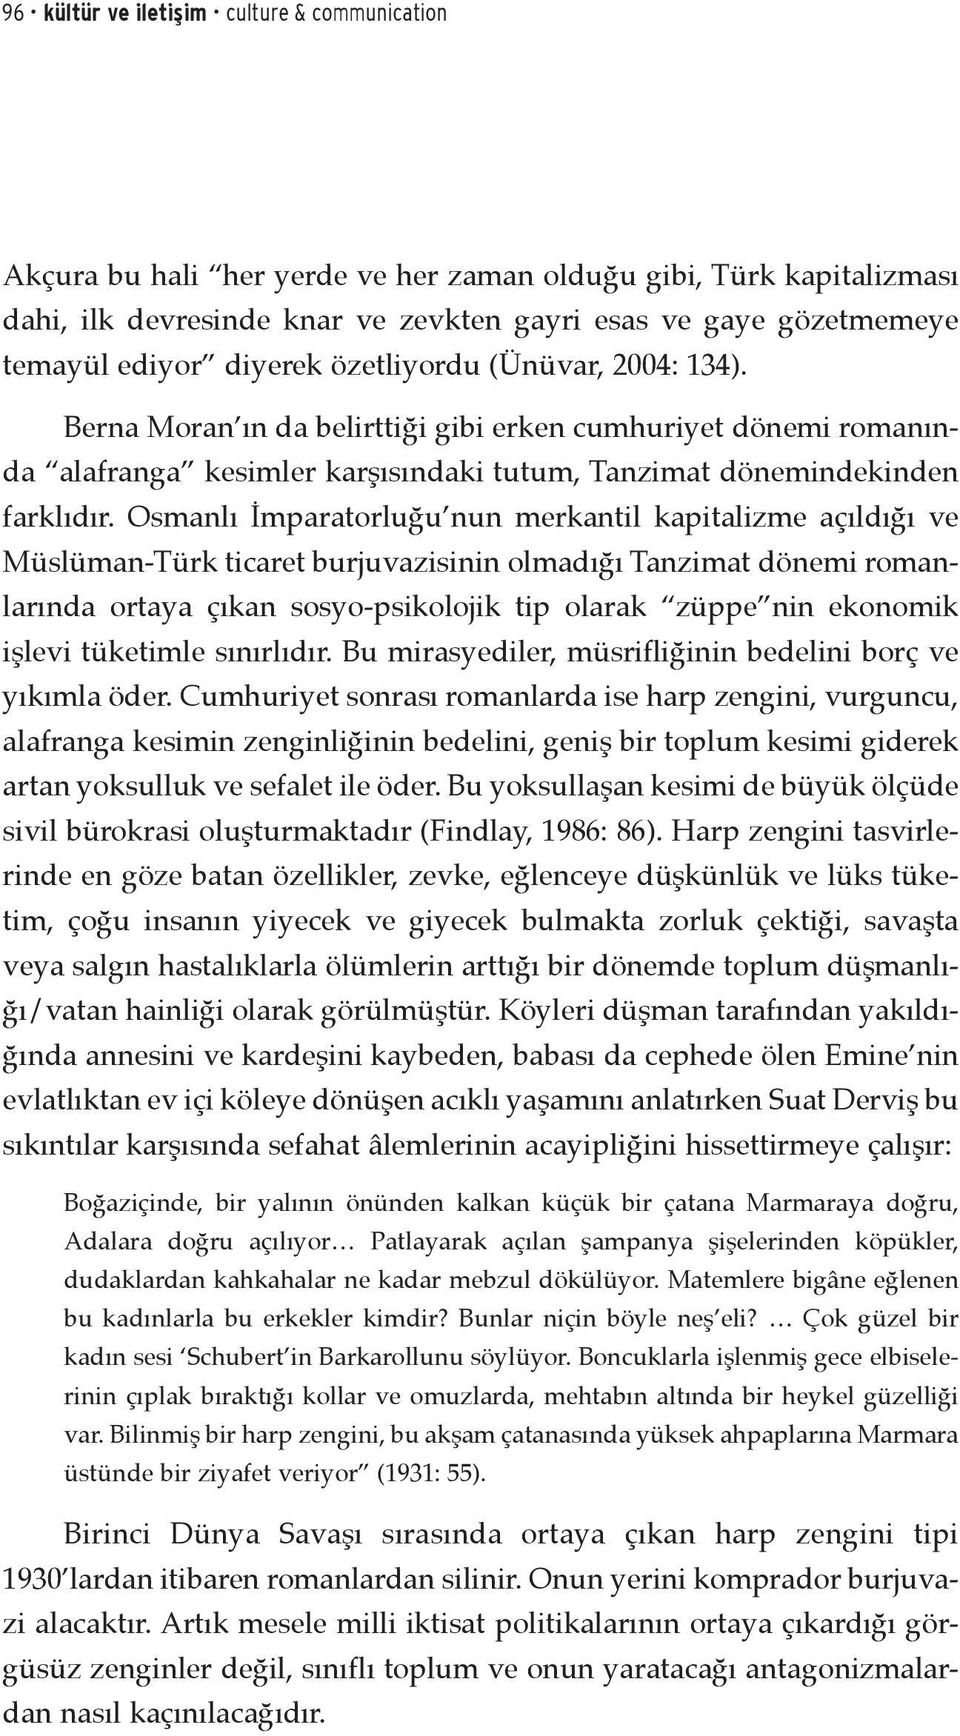 Osmanlı İmparatorluğu nun merkantil kapitalizme açıldığı ve Müslüman-Türk ticaret burjuvazisinin olmadığı Tanzimat dönemi romanlarında ortaya çıkan sosyo-psikolojik tip olarak züppe nin ekonomik